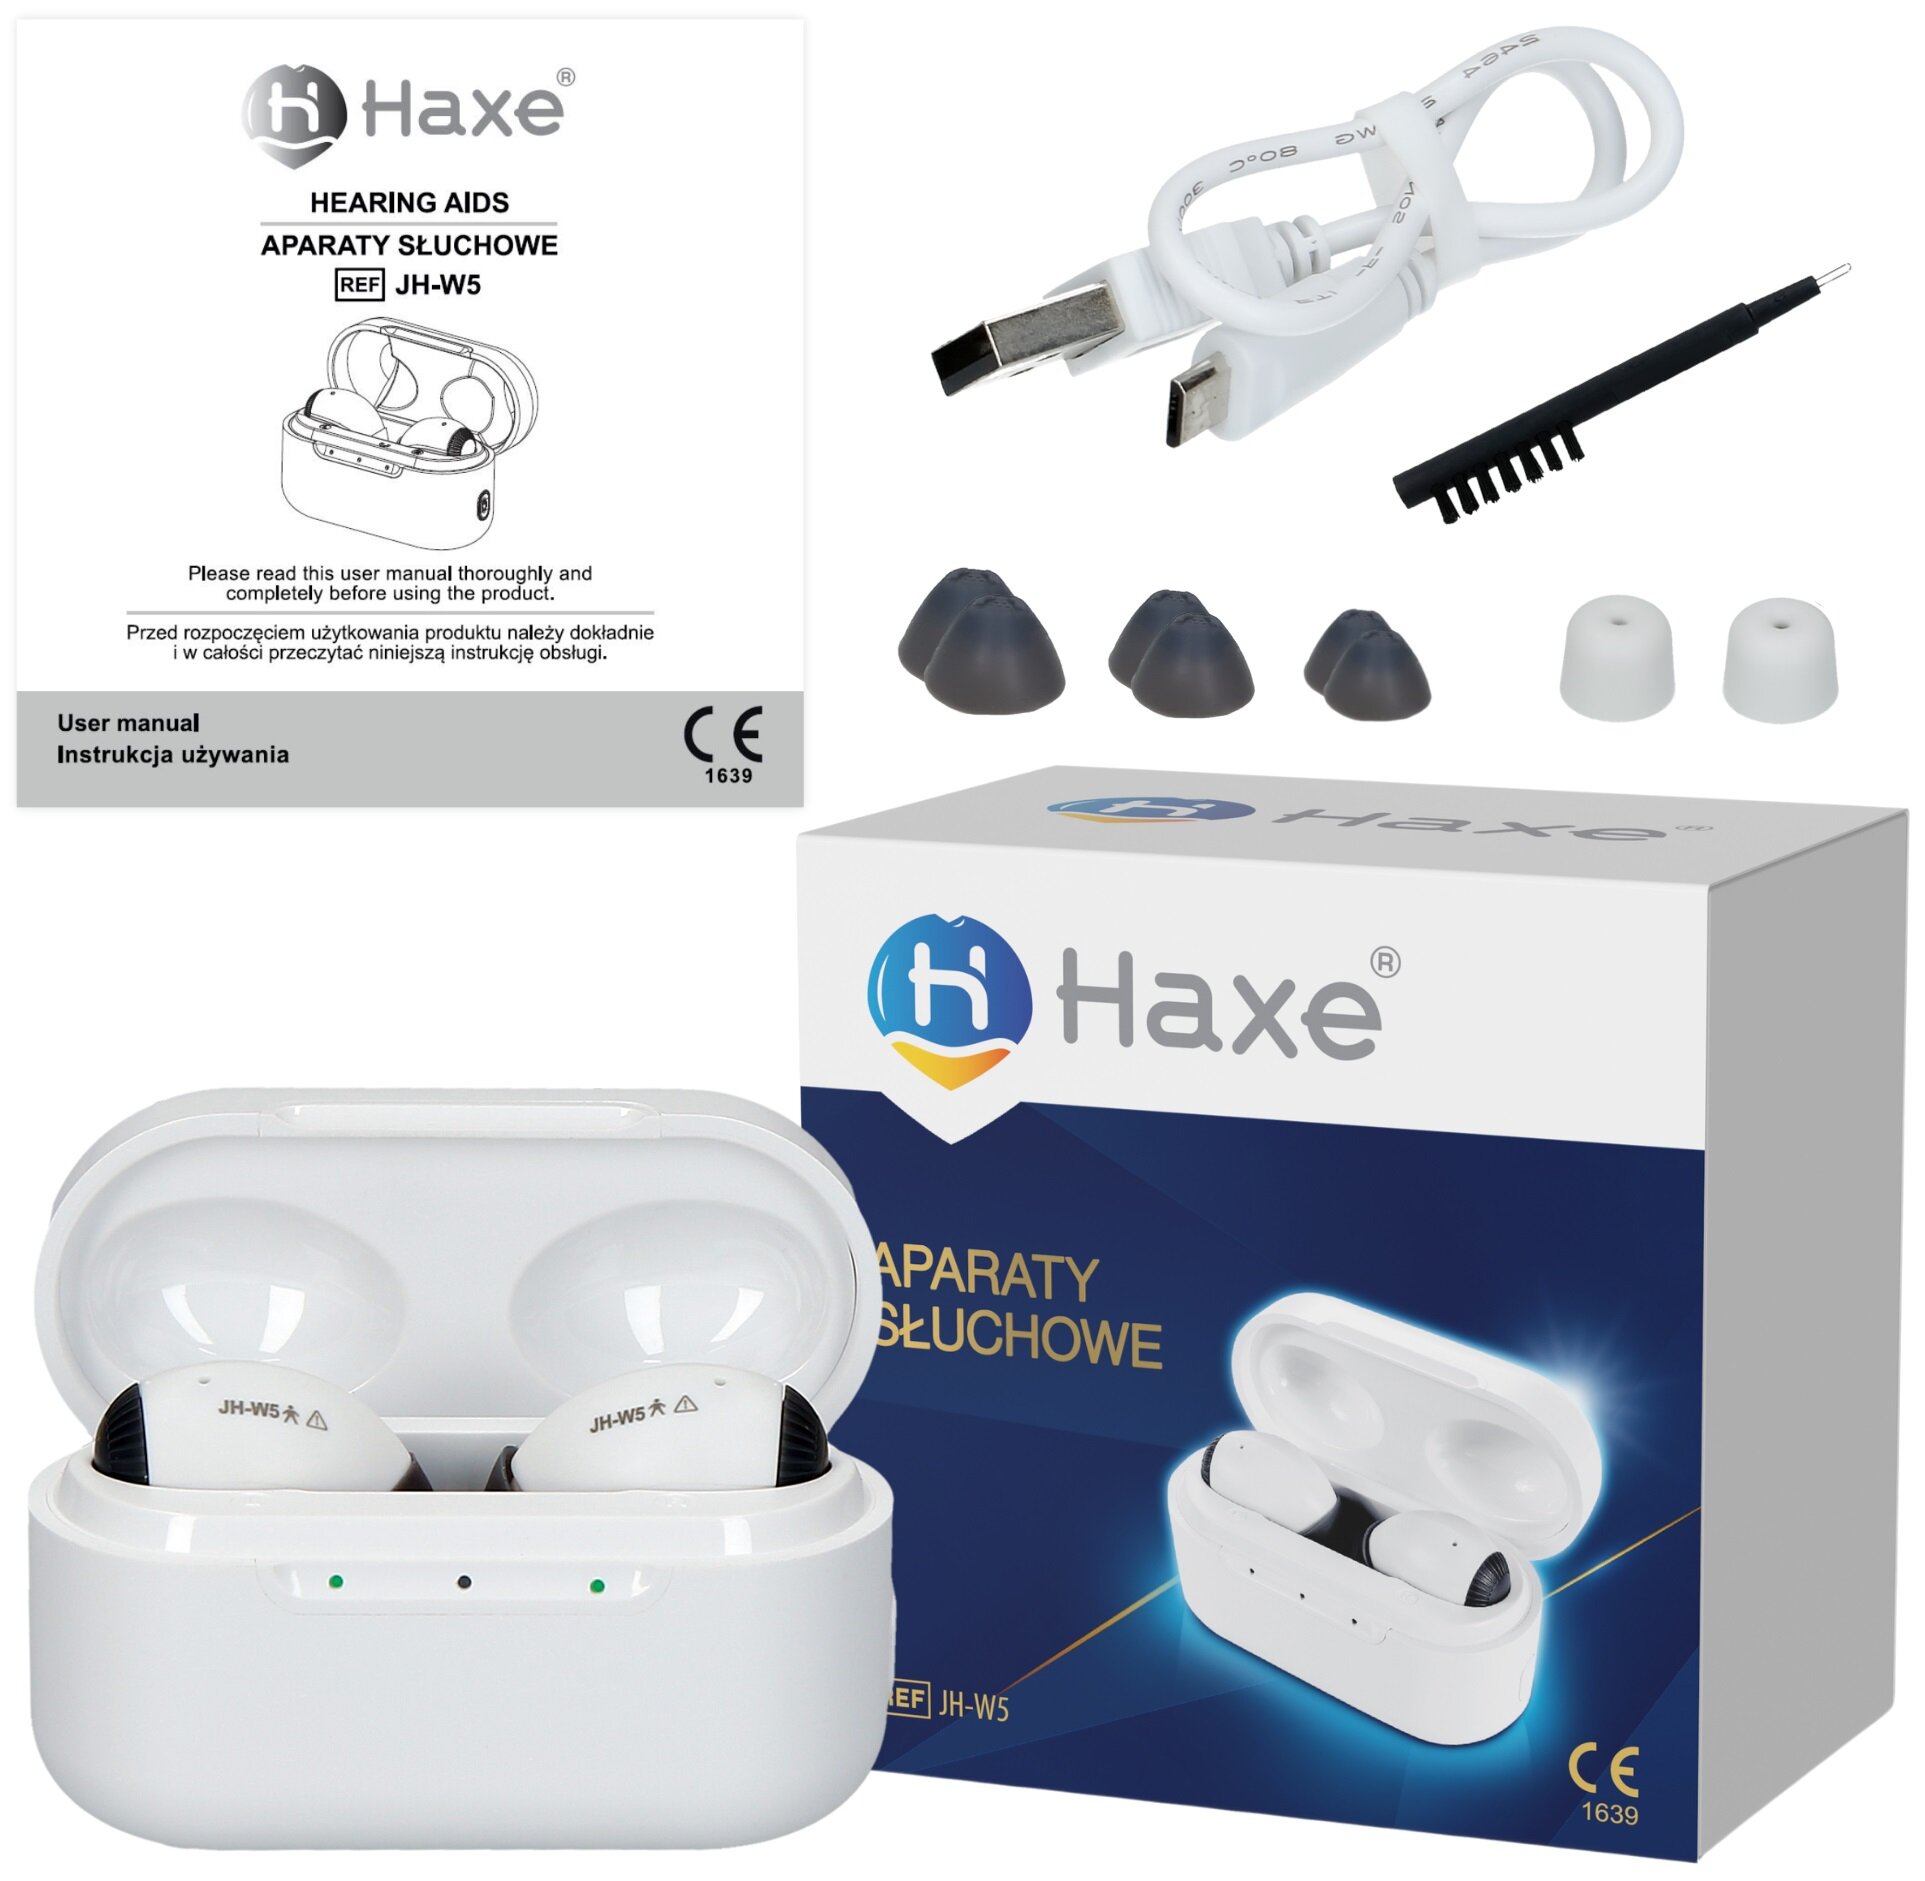 HAXE JH-W5 Aparat słuchowy - niskie ceny i opinie w Media Expert